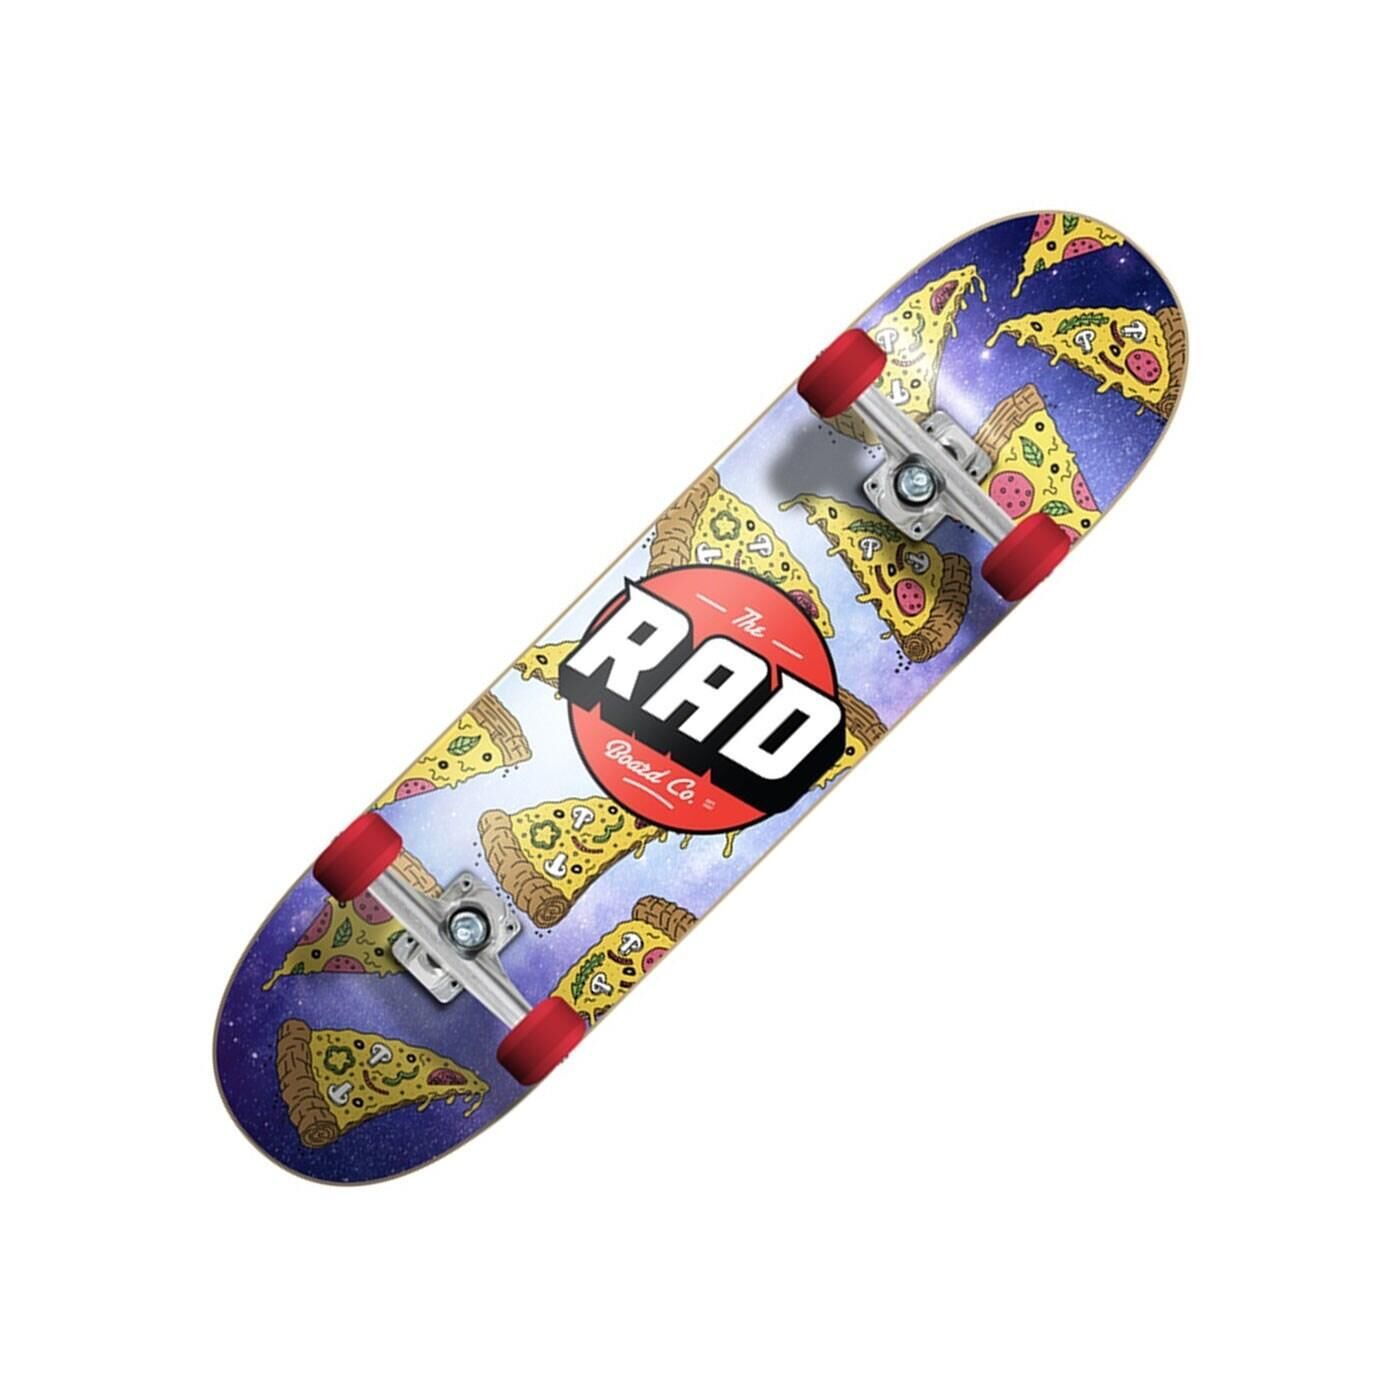 RAD BOARD CO. Pizza Galaxy Dude Crew 7.5inch Complete Skateboard